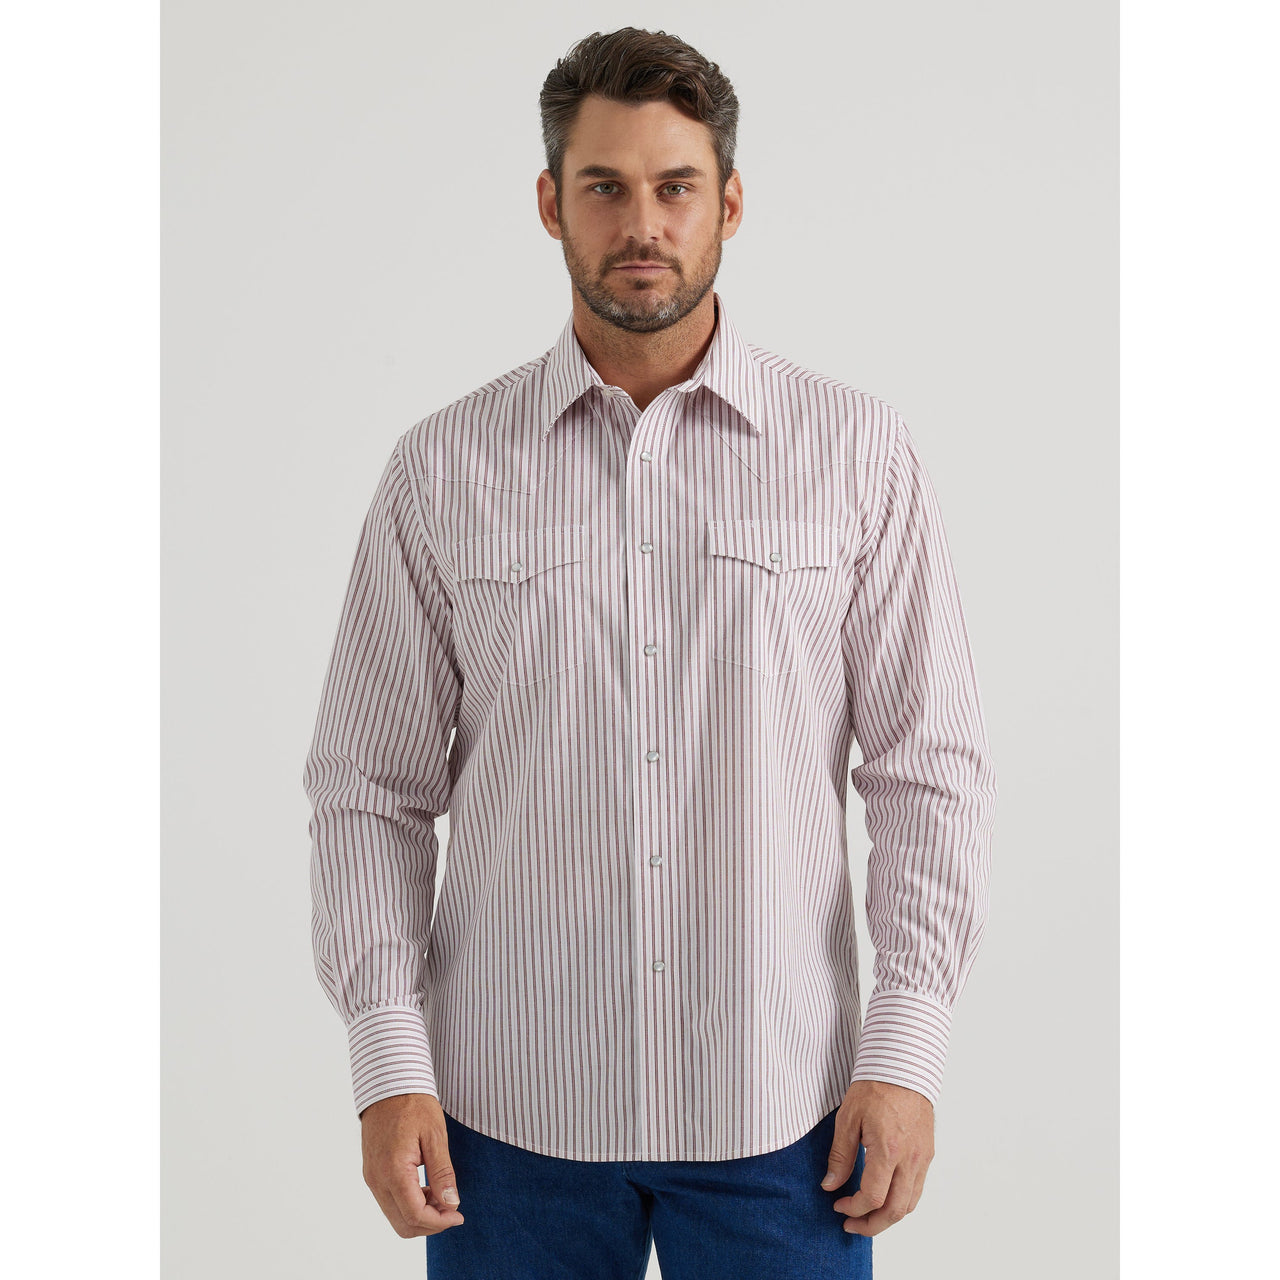 Wrangler Men's Wrinkle Resist Long Sleeve Stripe Shirt - White/Red